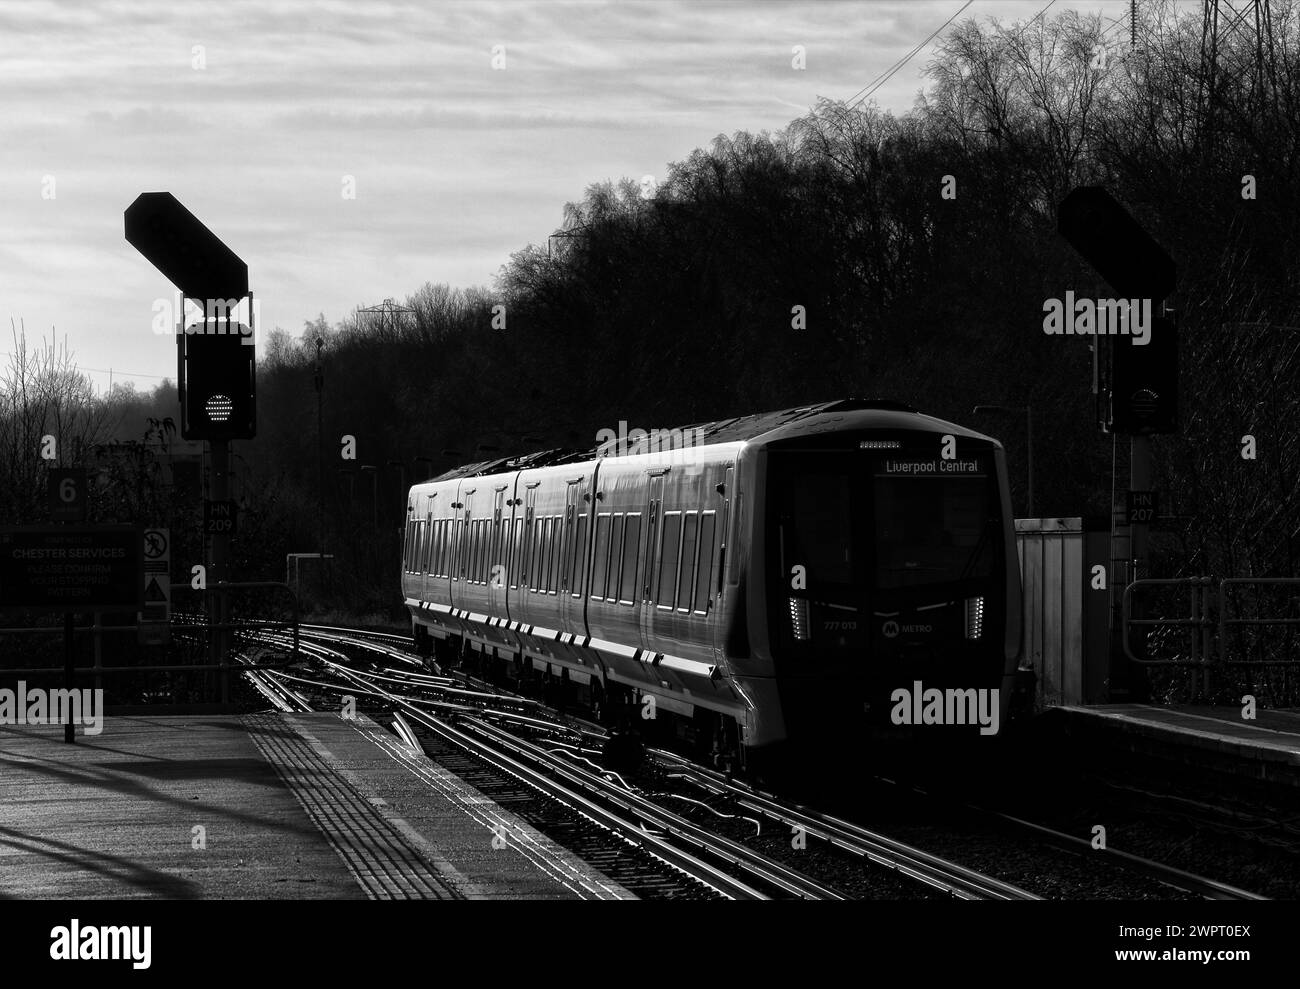 Treno elettrico Merseyrail Stadler classe 777 777013 che arriva alla stazione ferroviaria di Hooton, Cheshire, Regno Unito. Foto Stock